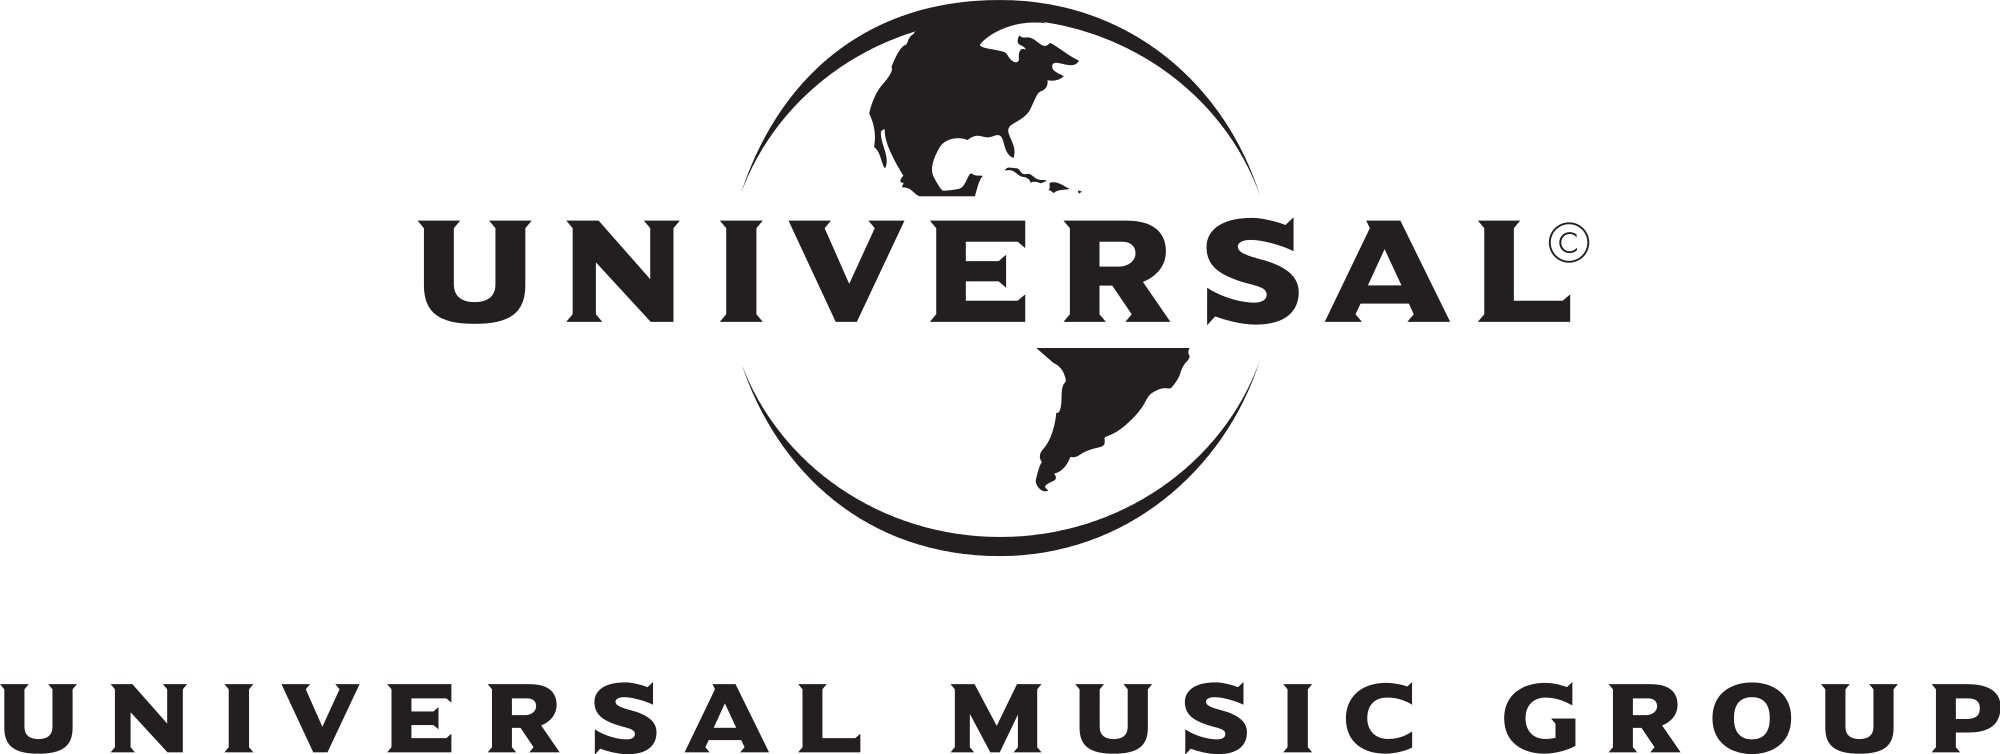 Universal Music Group UMG Logo